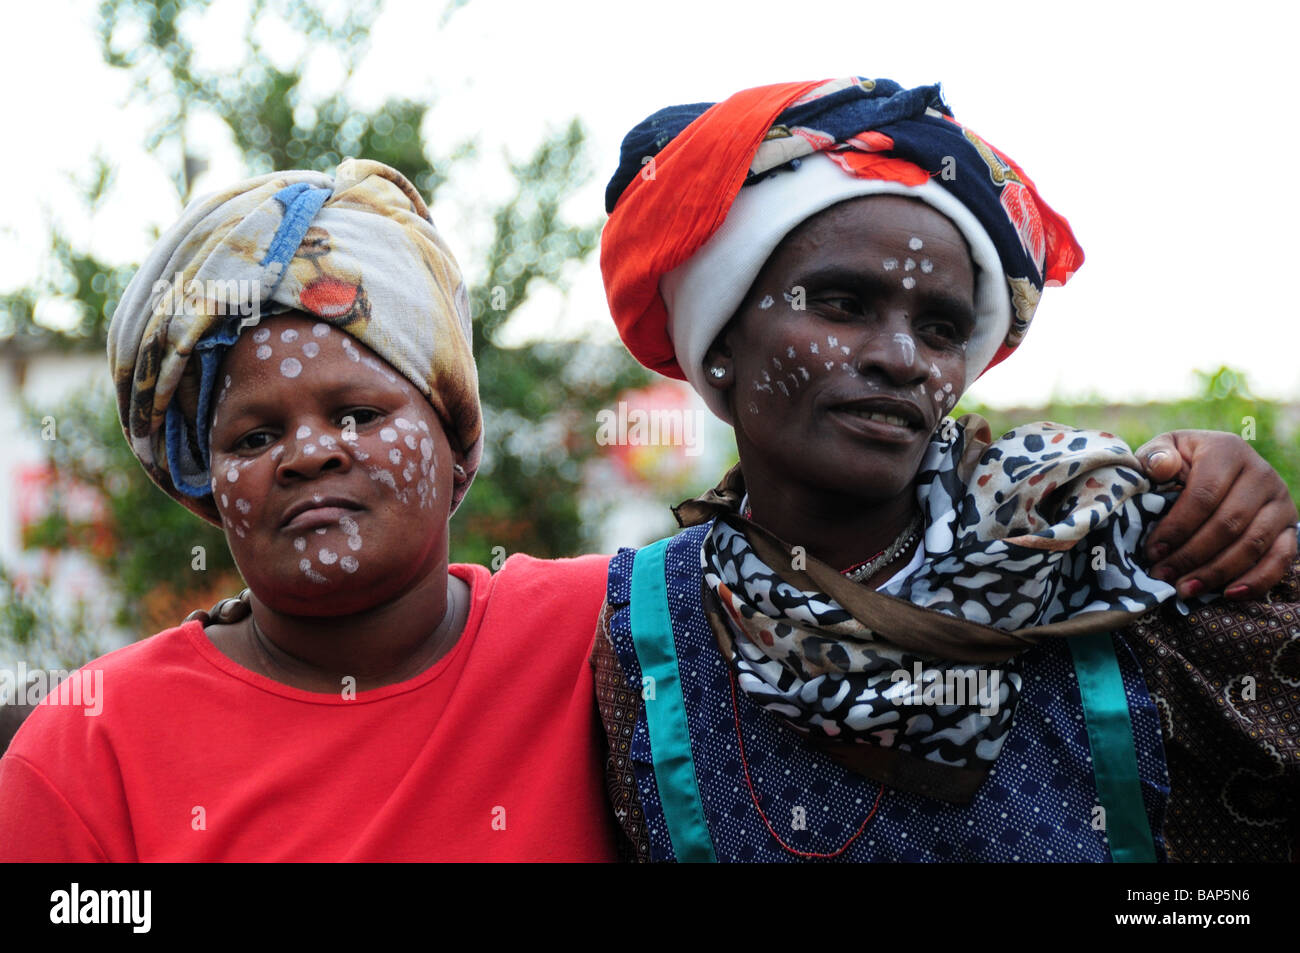 Township del sud africa donne tribali superfici verniciate Foto Stock